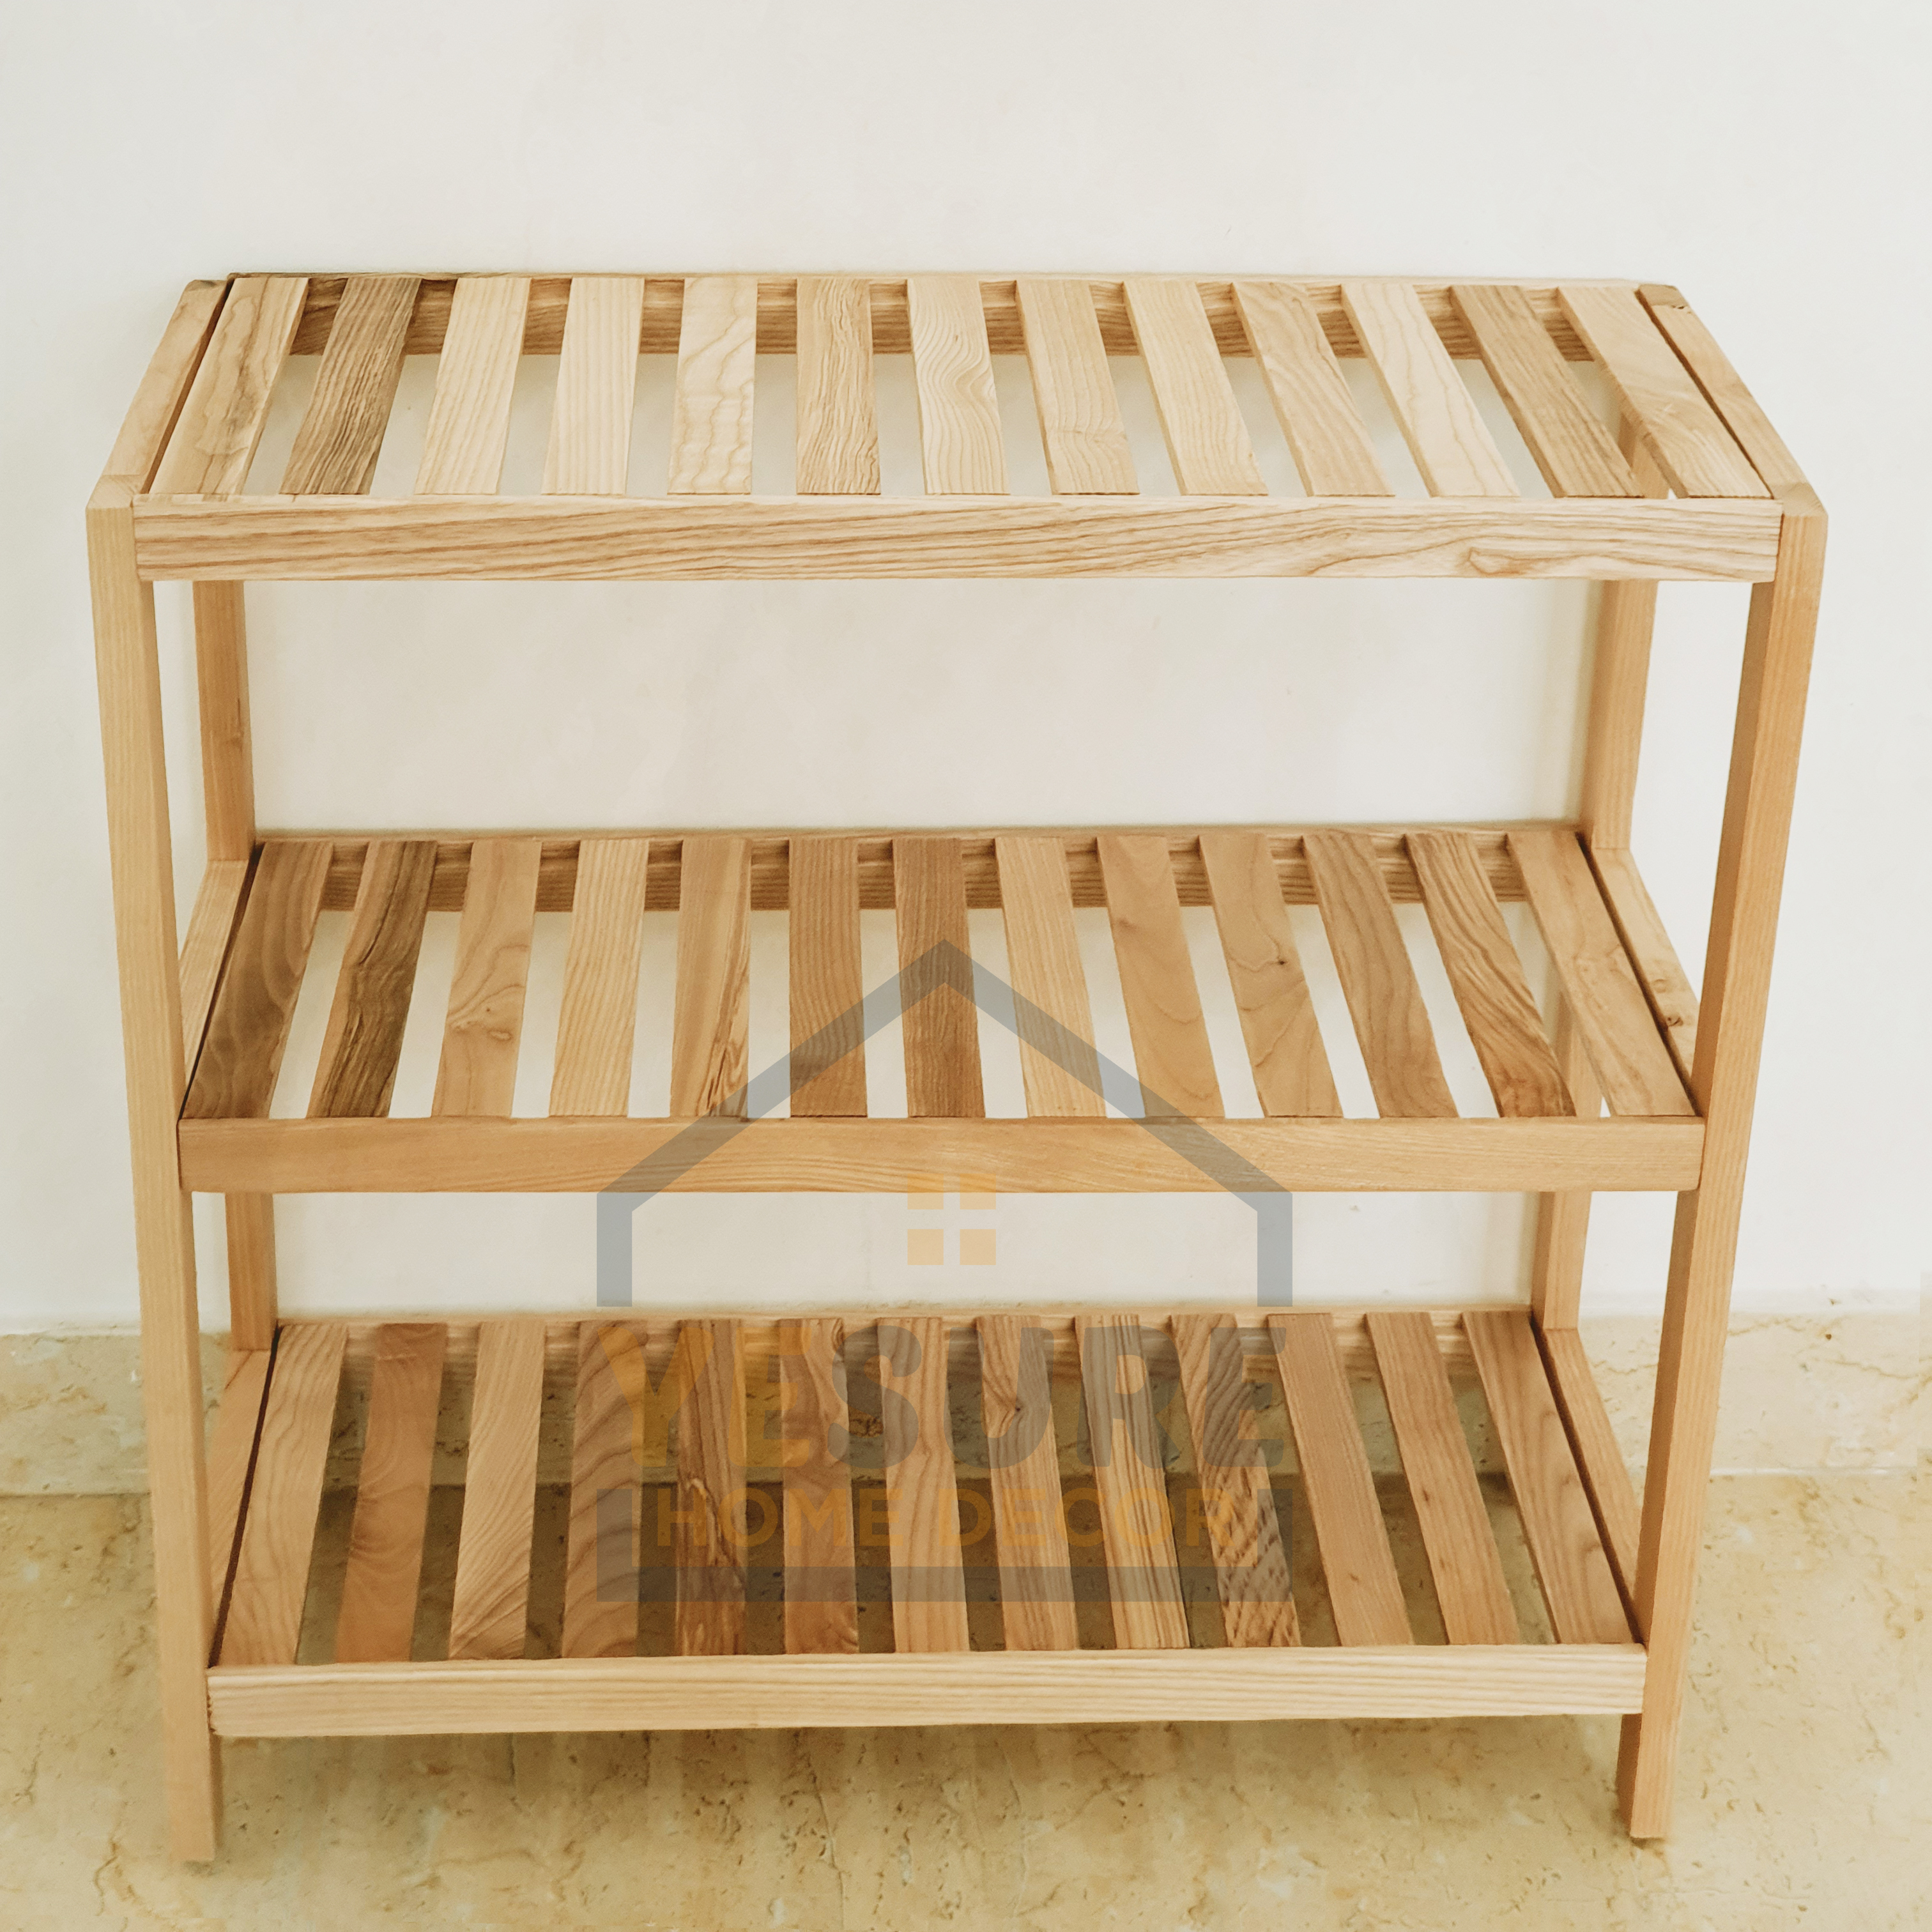 Kệ gỗ Tần Bì  đa năng dùng trang trí phòng ngủ , tab đầu giường , để giầy dép YESURE HOME DECOR - Hàng chính hãng 